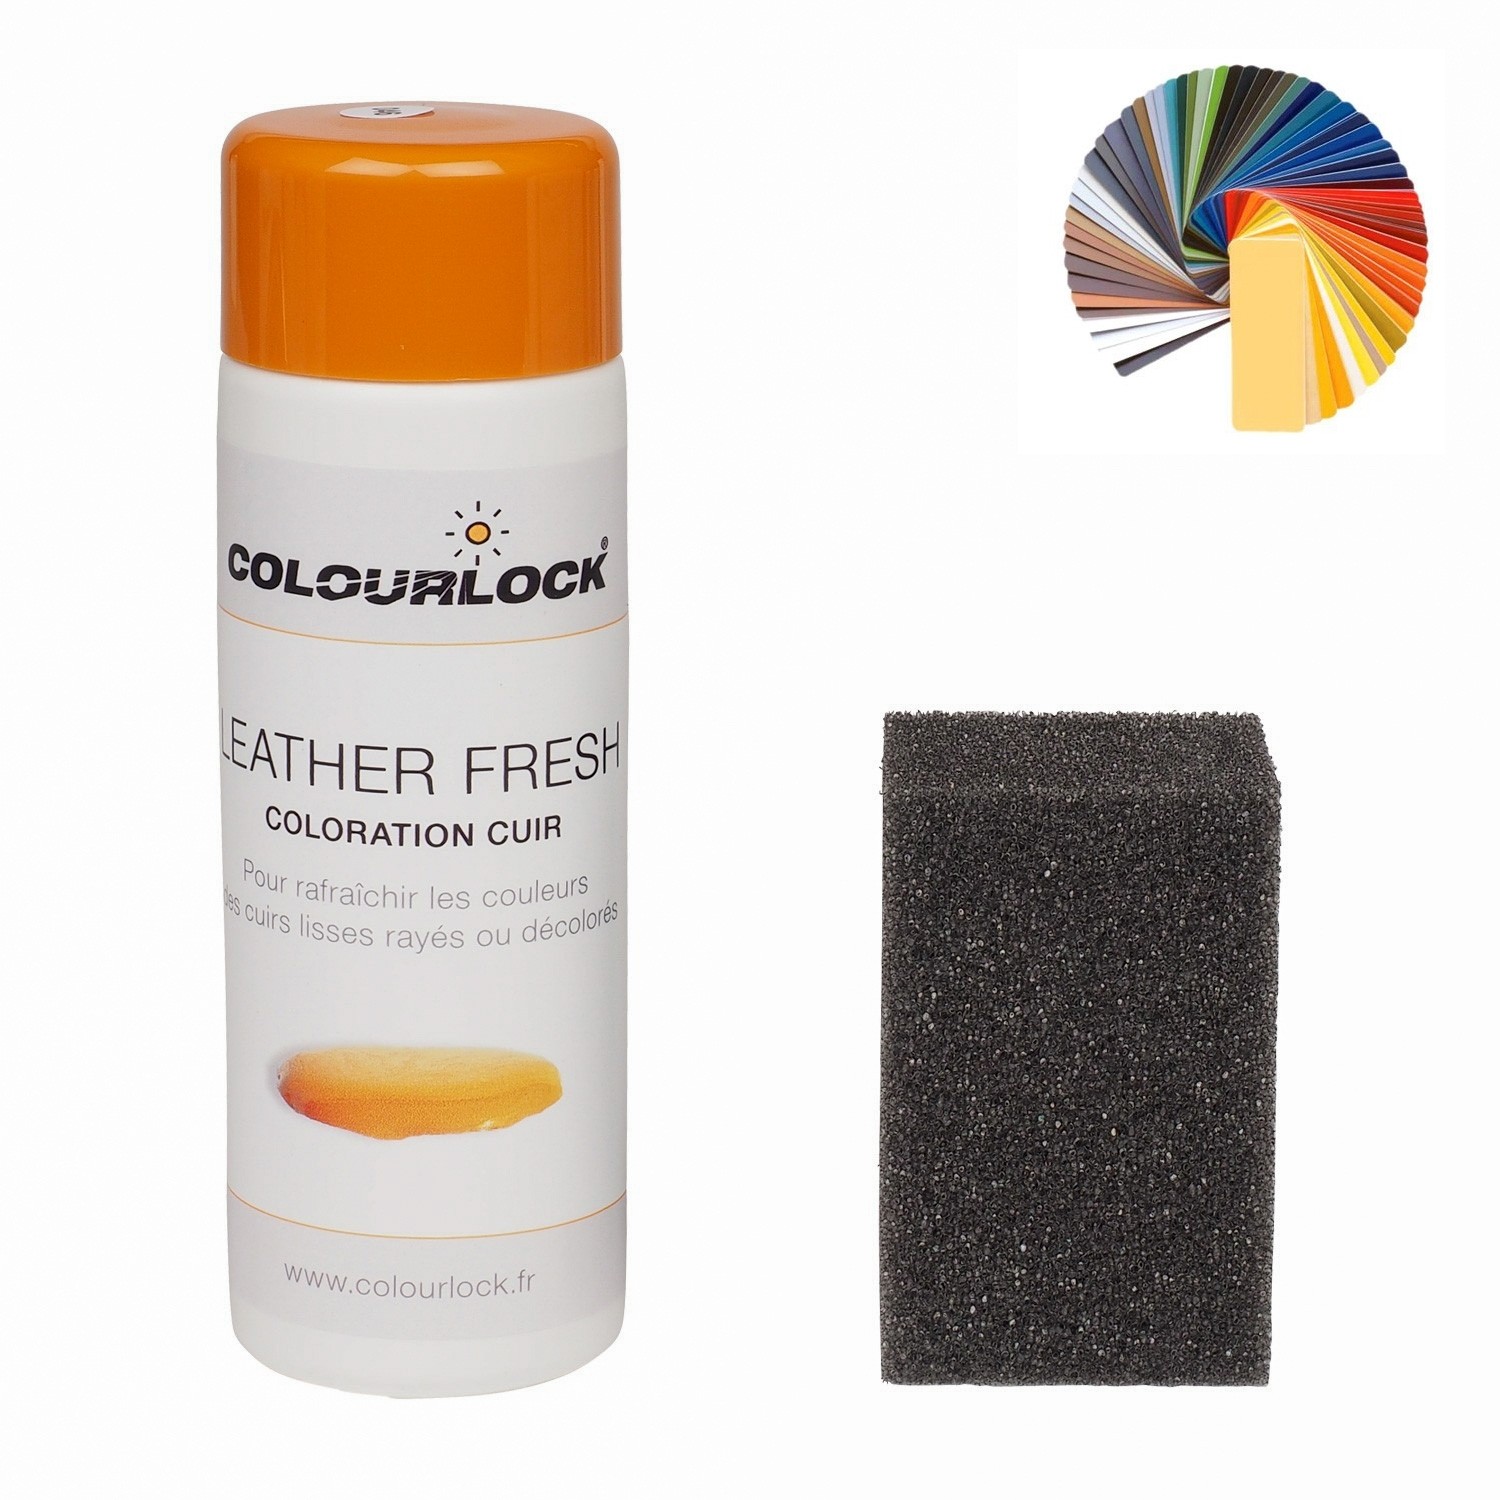 Colourlock Teinture pour cuir pour restaurer la couleur du cuir, les  éraflures ou dommages présents sur les sièges de voiture, canapés, sacs ou